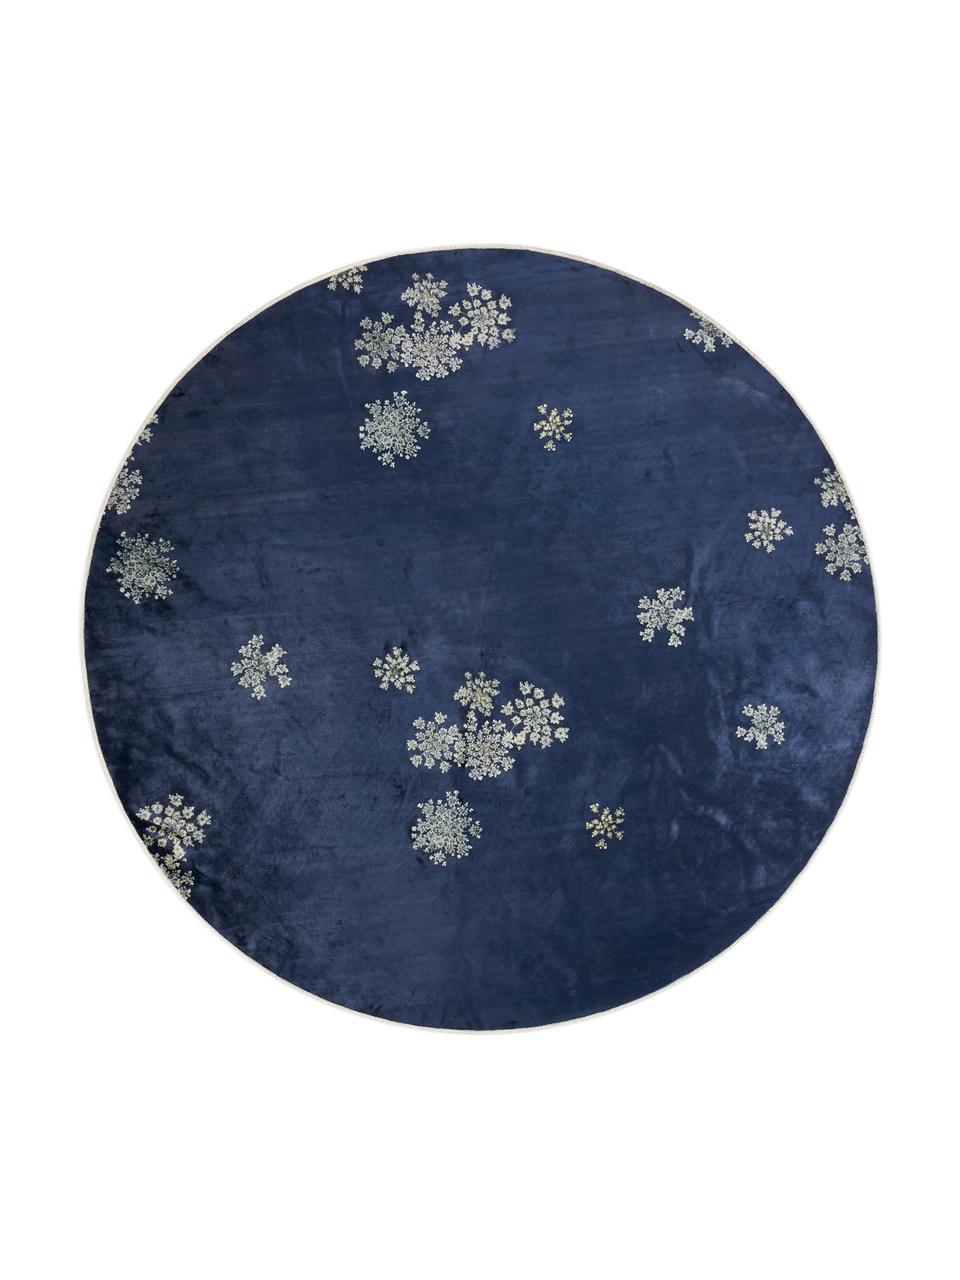 Runder Teppich Lauren mit Blumenprint, 60% Polyester, 30% thermoplastisches Polyurethan, 10% Baumwolle, Blau, Beige, Ø 90 cm (Größe XS)